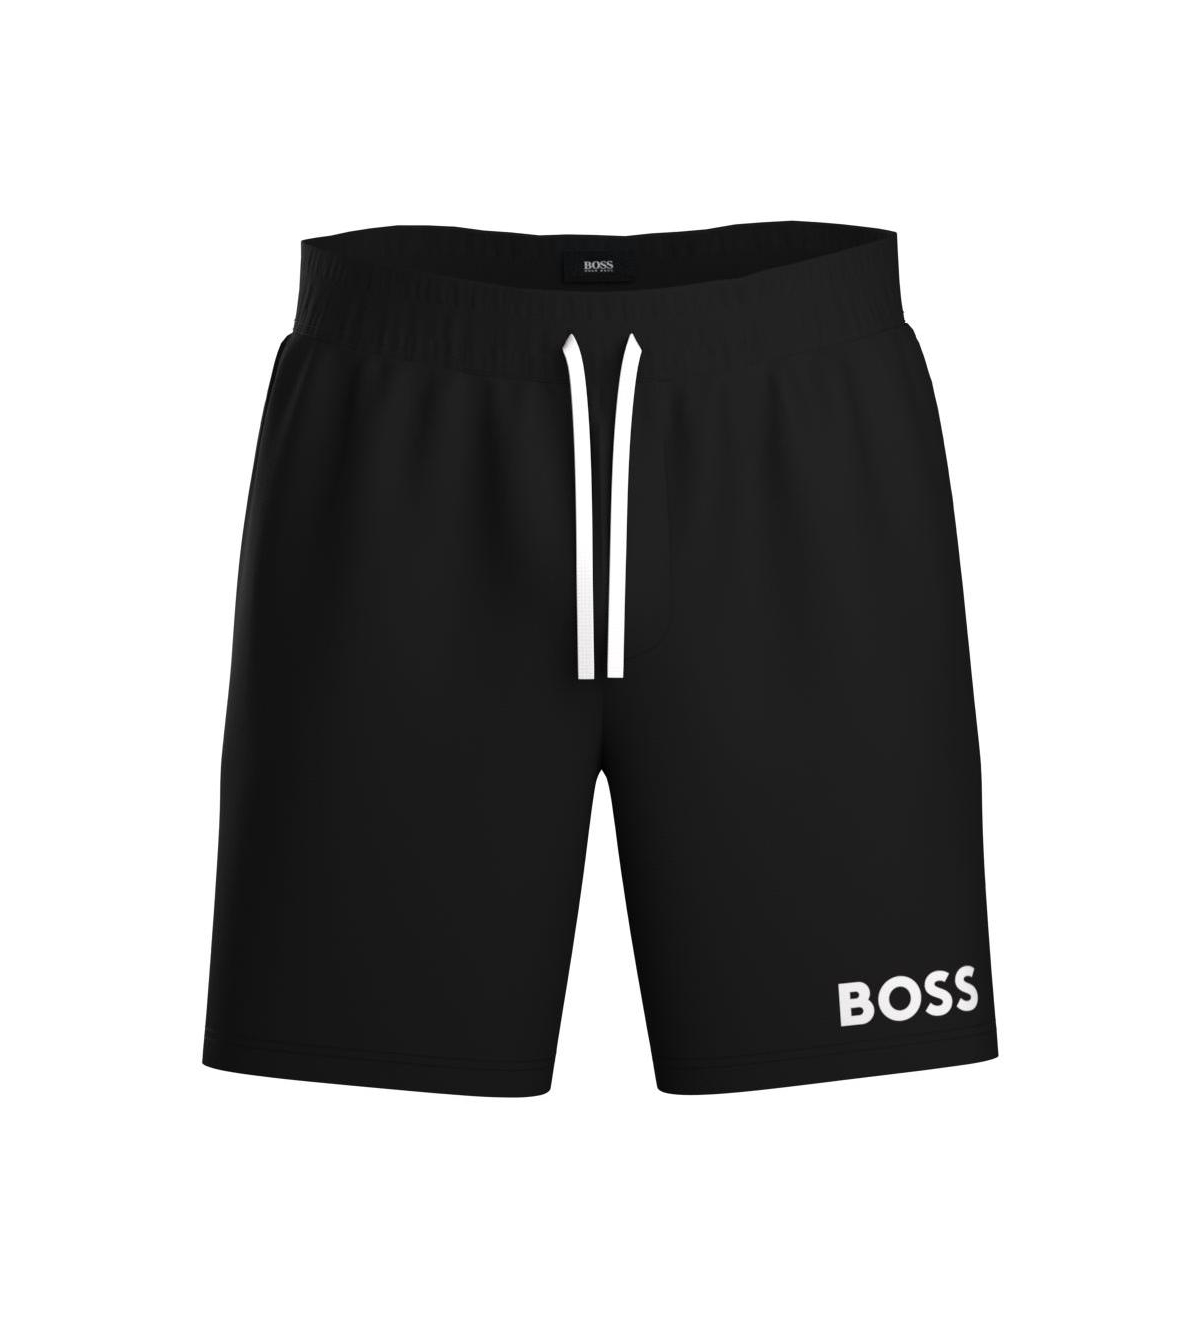 HUGO BOSS Shorts for Men